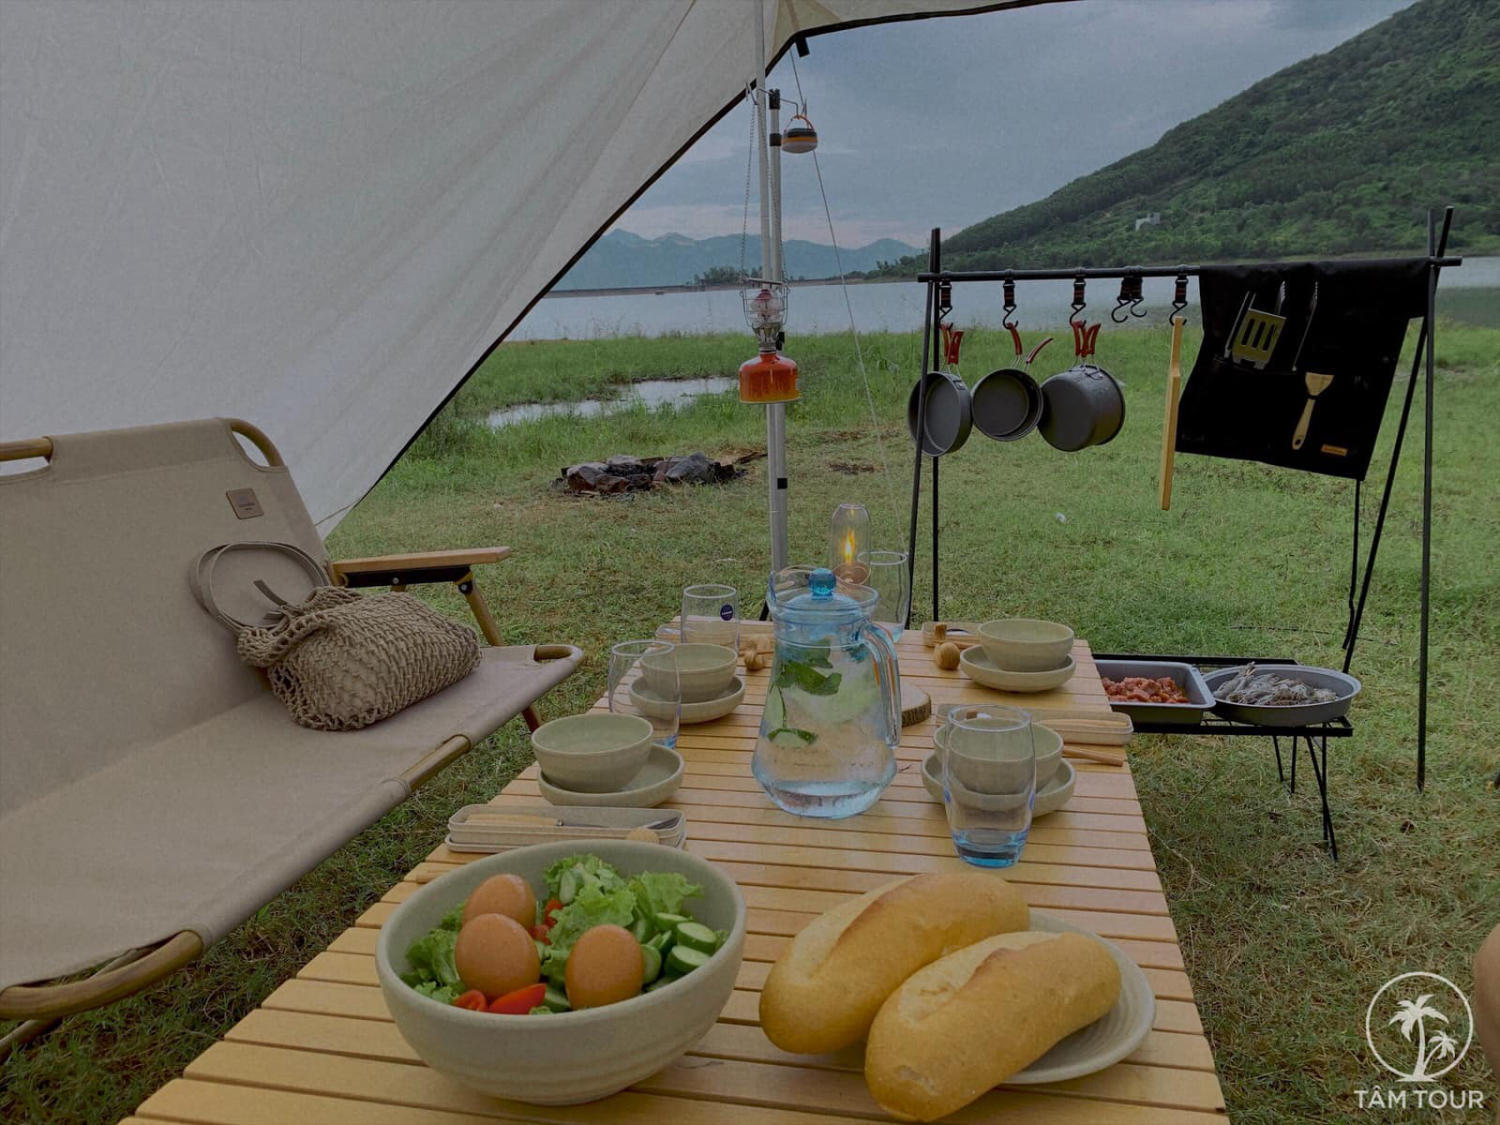 Buổi chiều ngồi chill - Cùng Tâm Tour cắm trại giữa núi rừng Nha Trang đẹp tựa tranh vẽ 5